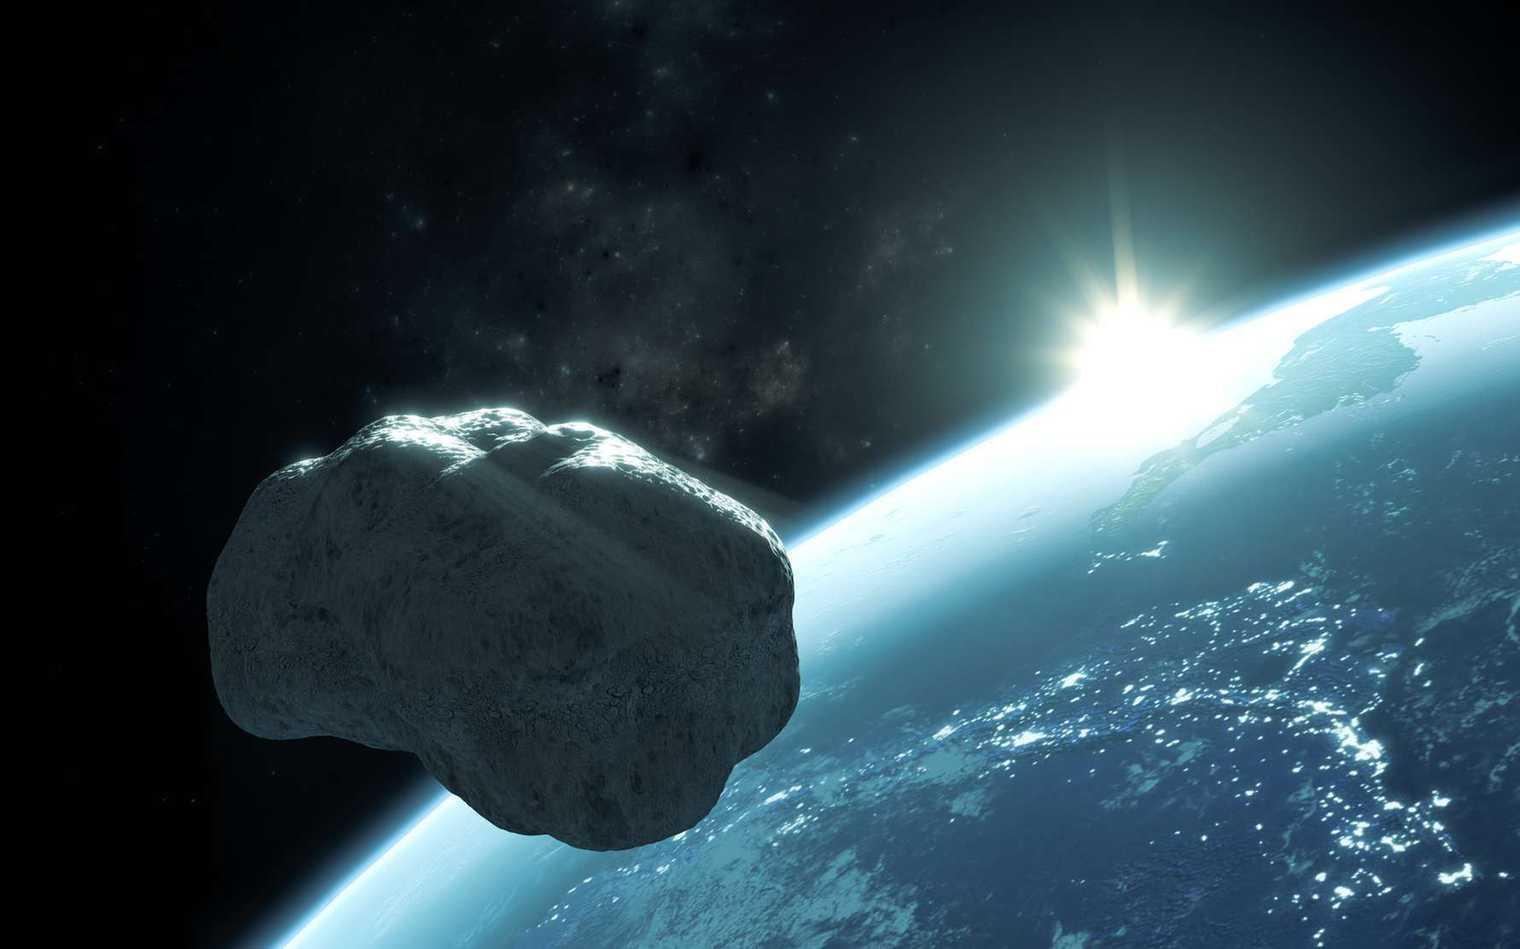 Cet astéroïde qui est passé près de la Terre est l’un des plus allongés jamais imagé